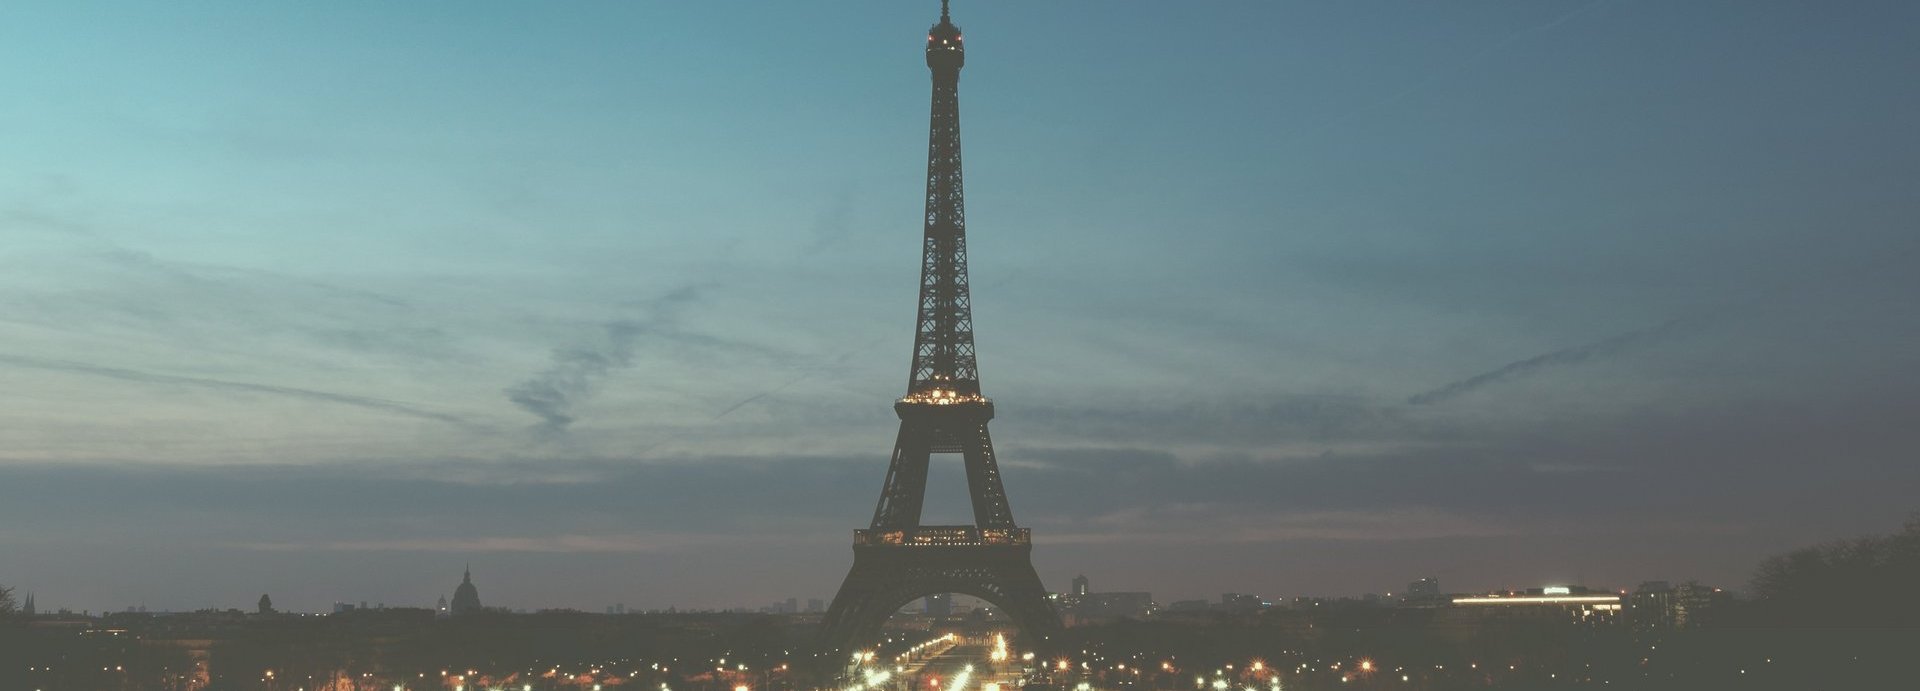 Fernaufnahme des Eiffelturms vor einem halb hellblauem halb dunkelblauem Himmel. Am Fuß des Eiffelturms beleuchtete Straßen